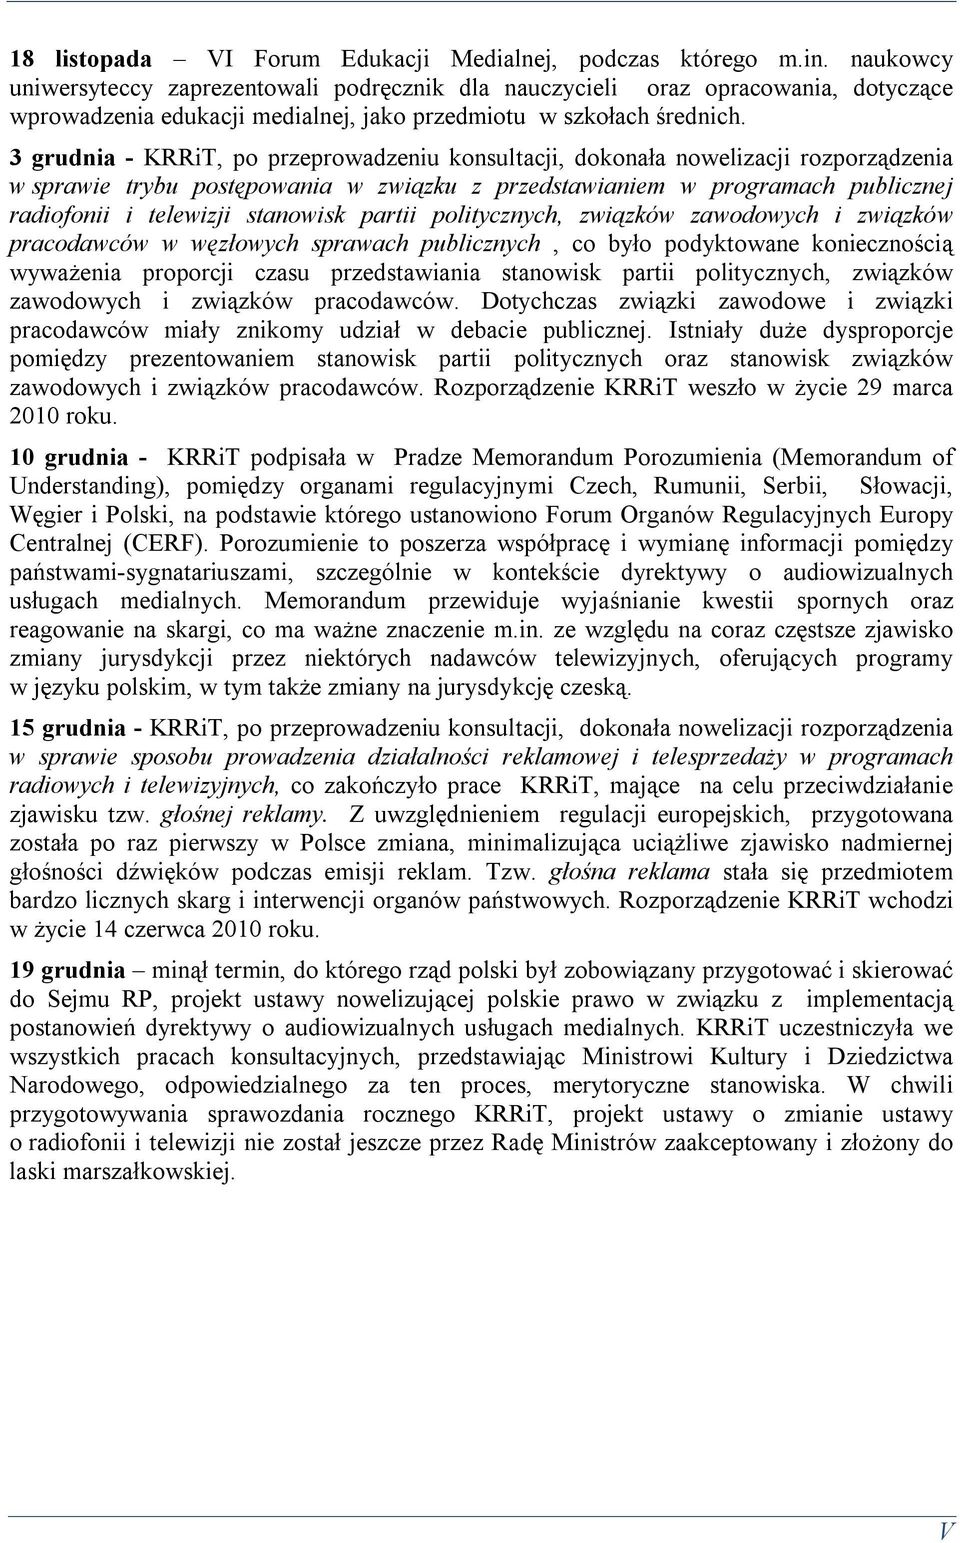 3 grudnia - KRRiT, po przeprowadzeniu konsultacji, dokonała nowelizacji rozporządzenia w sprawie trybu postępowania w związku z przedstawianiem w programach publicznej radiofonii i telewizji